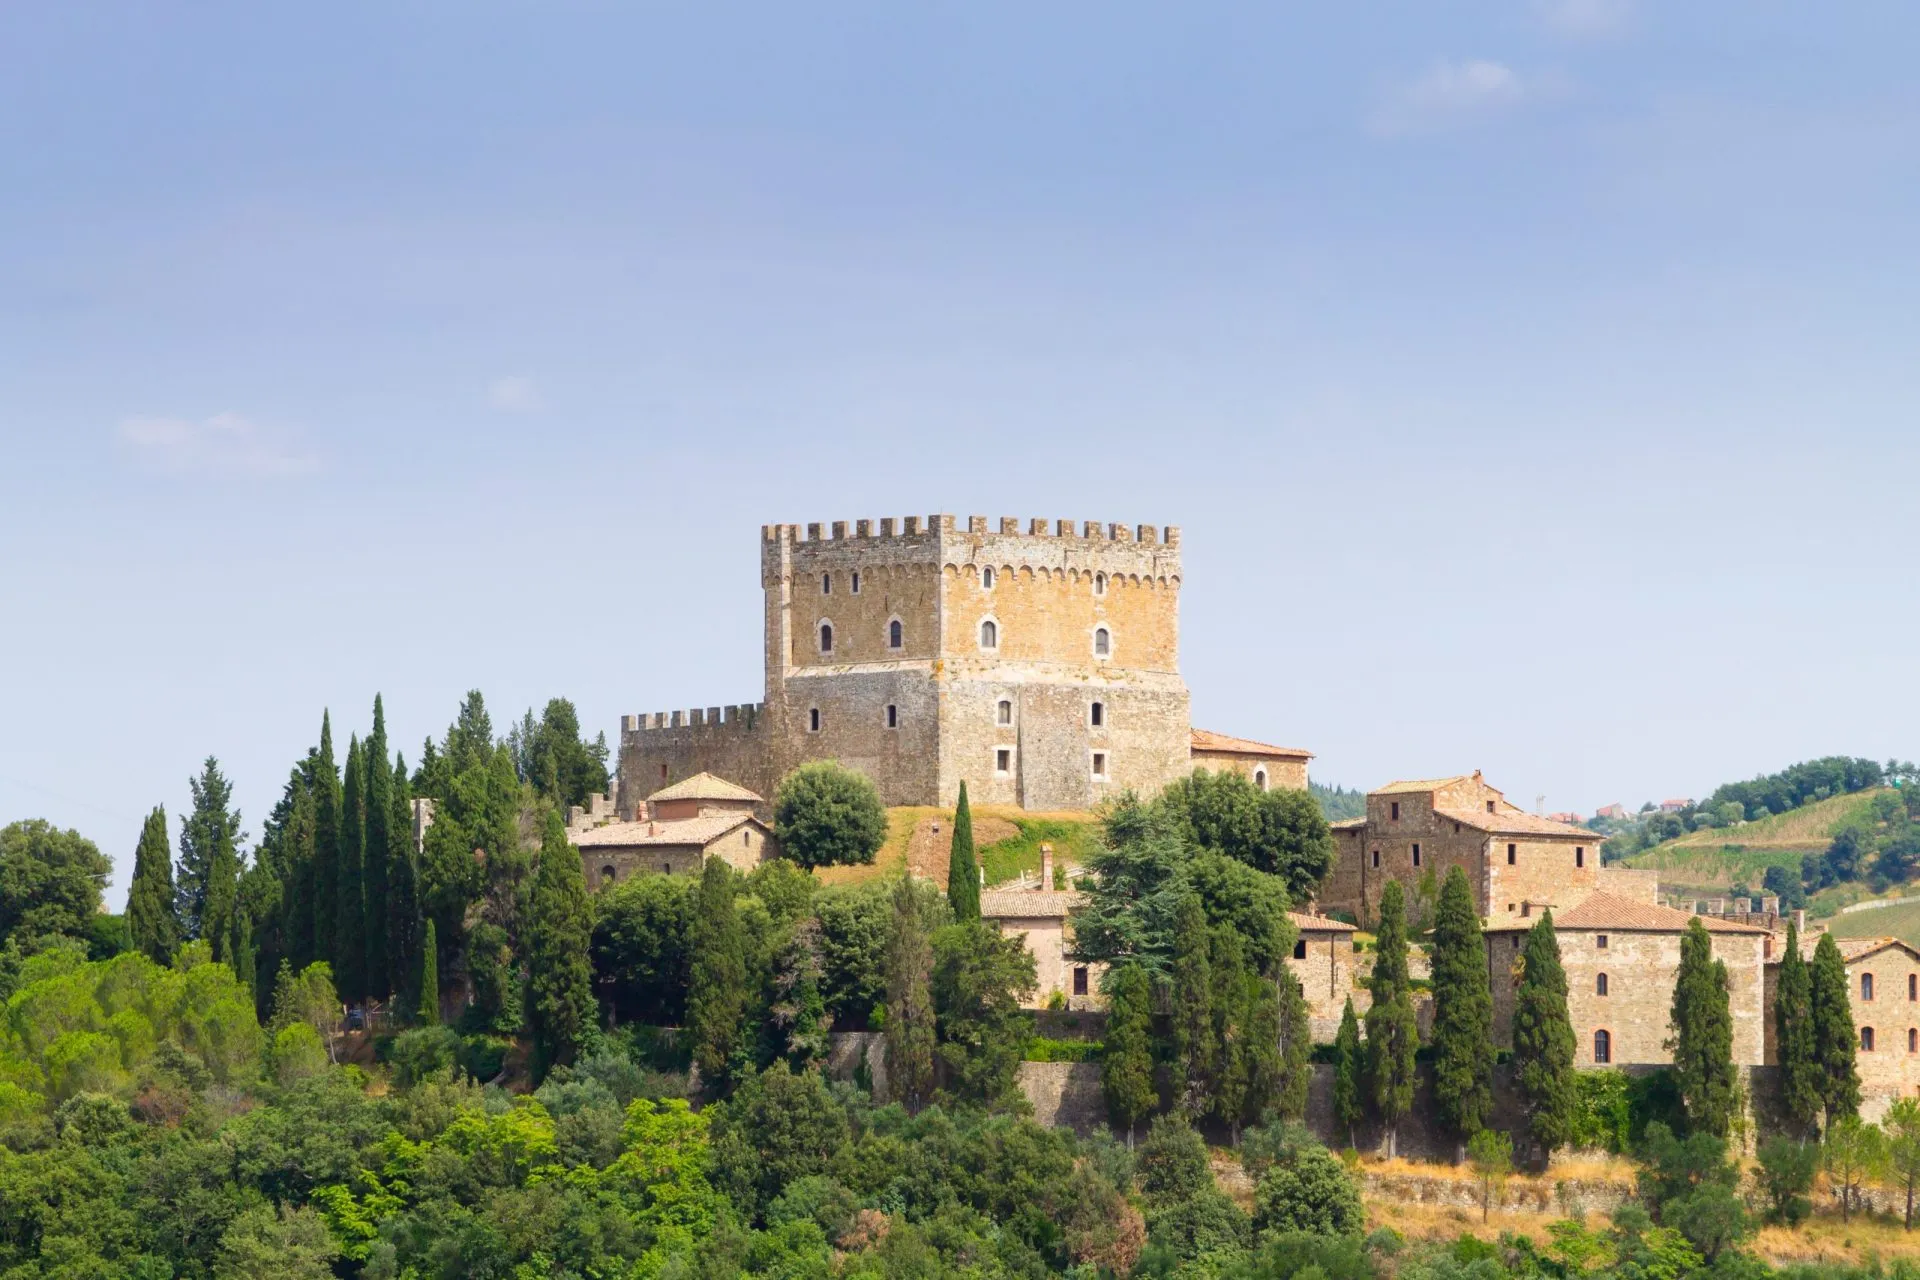 Ripa d'Orcia castle view, Tuscany landmark, Italy